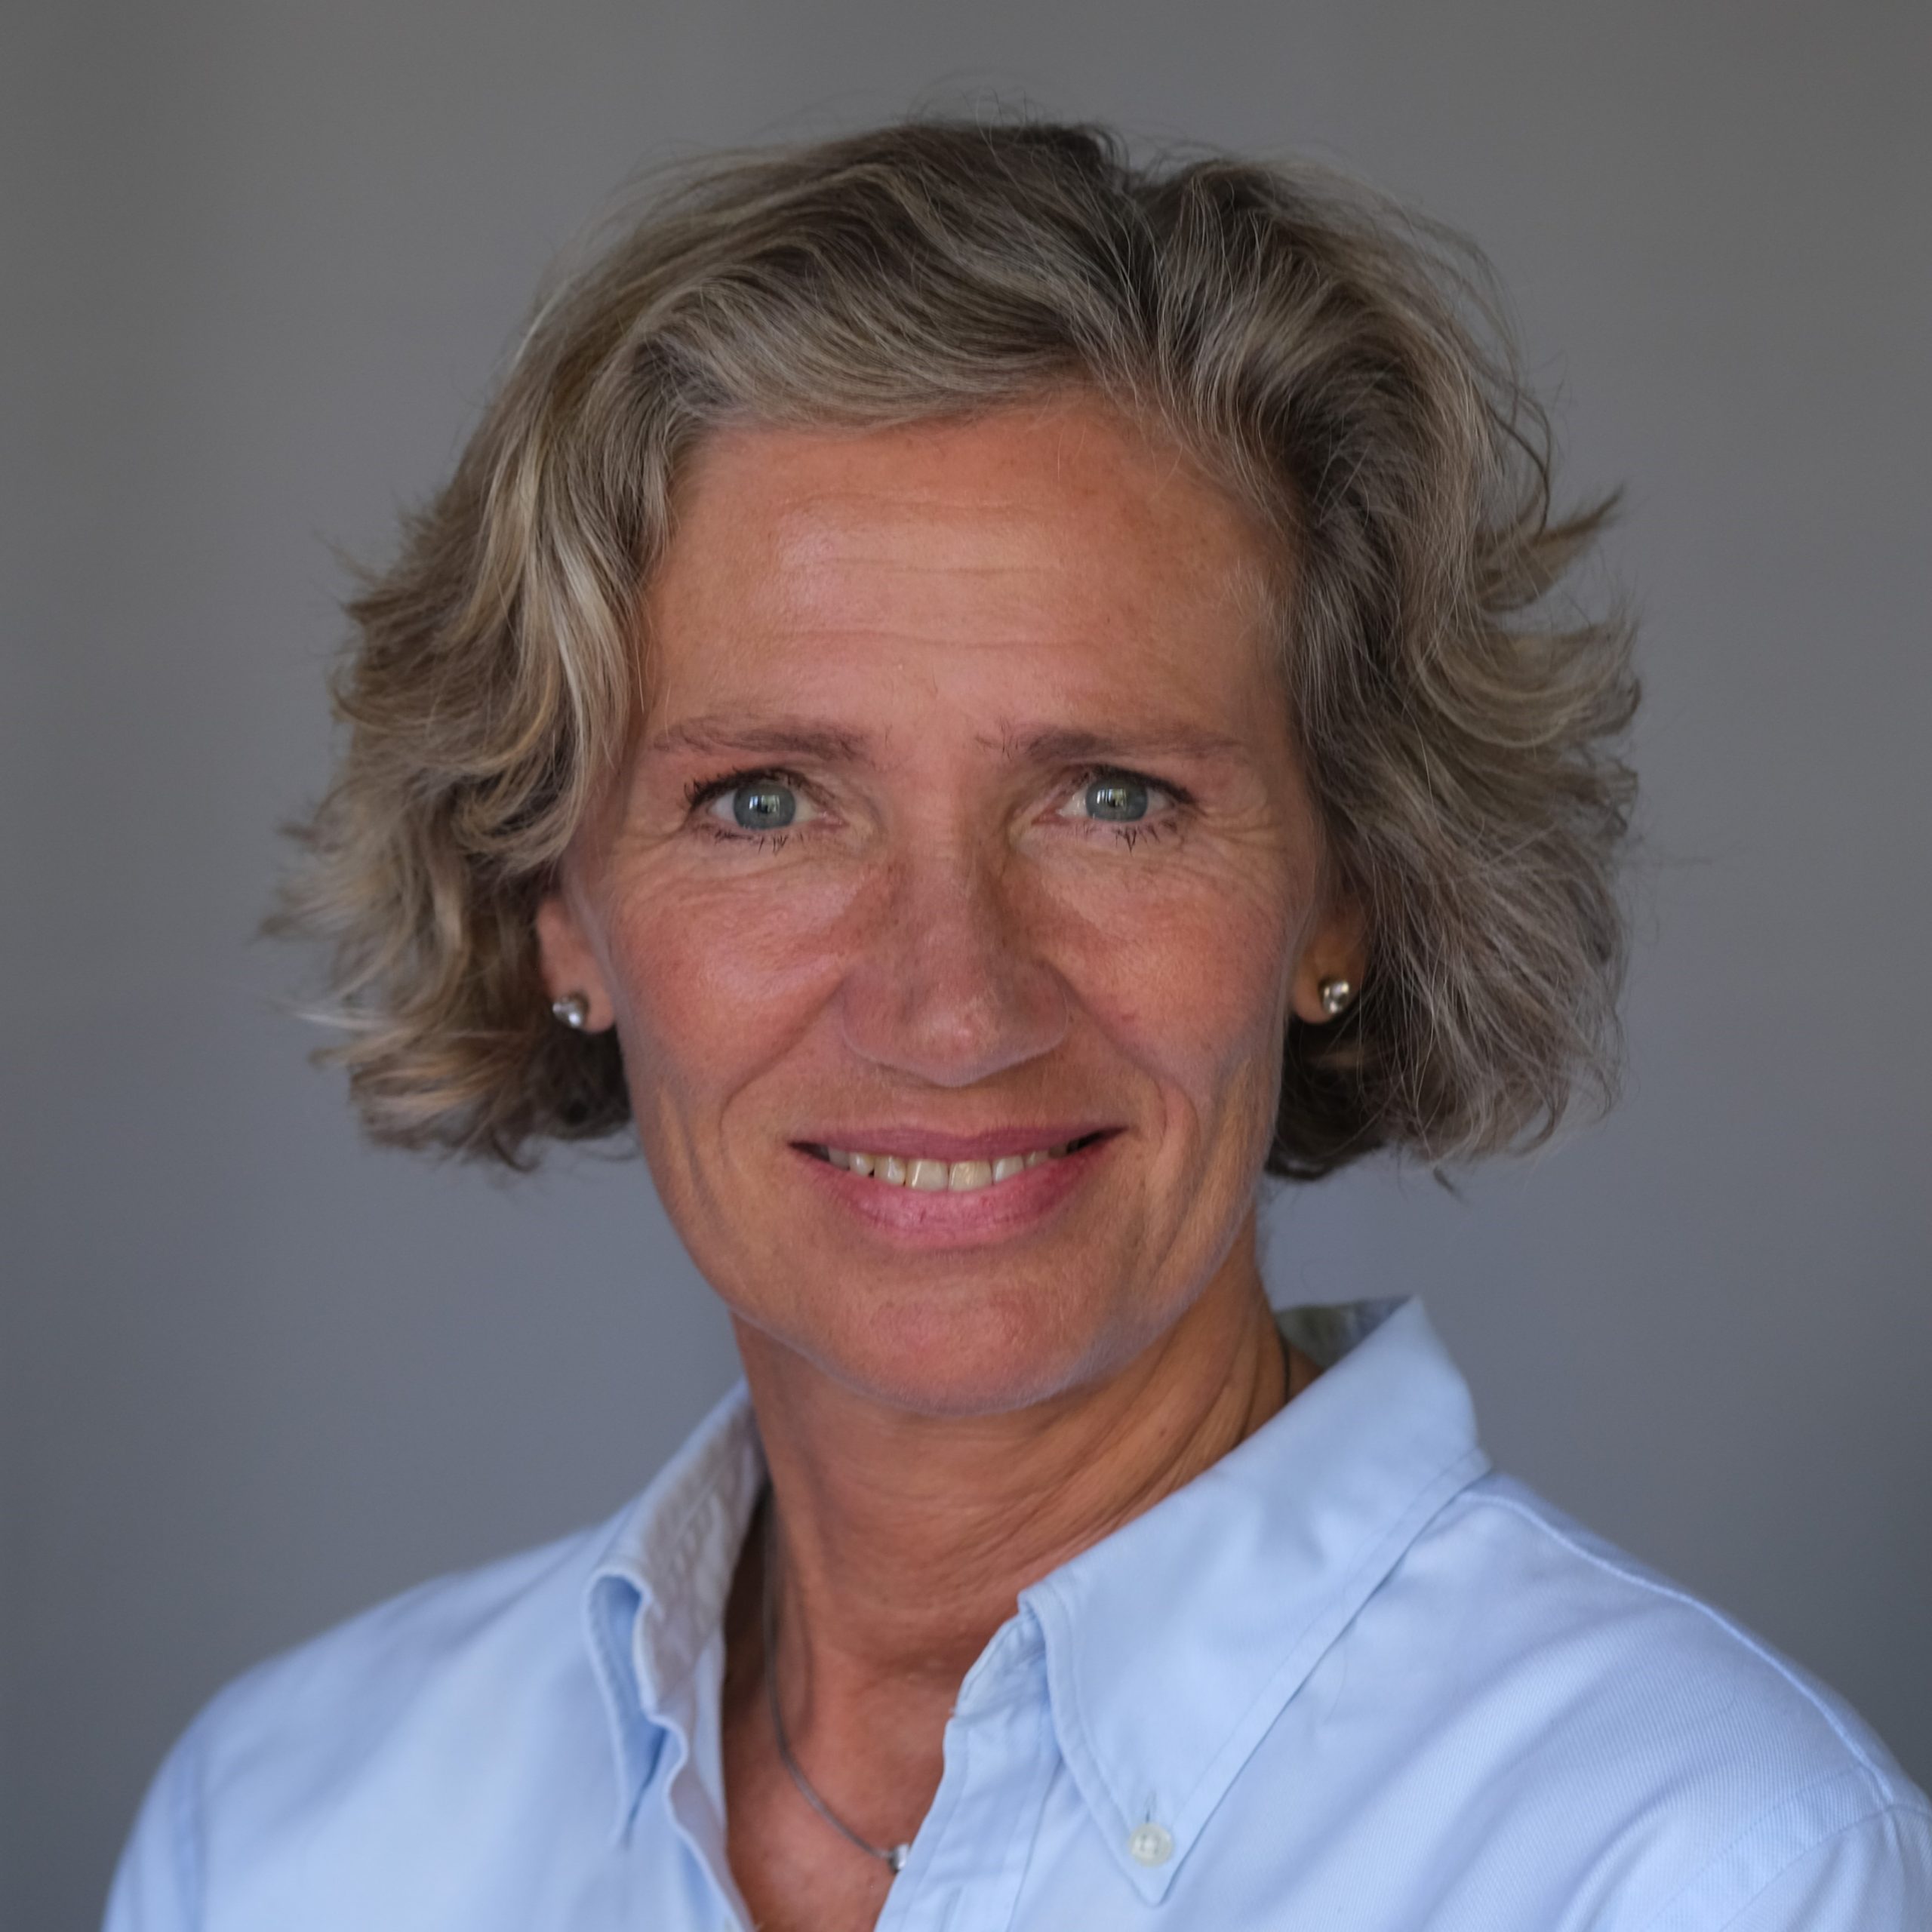 Speaker - Dr. Franziska Offermann